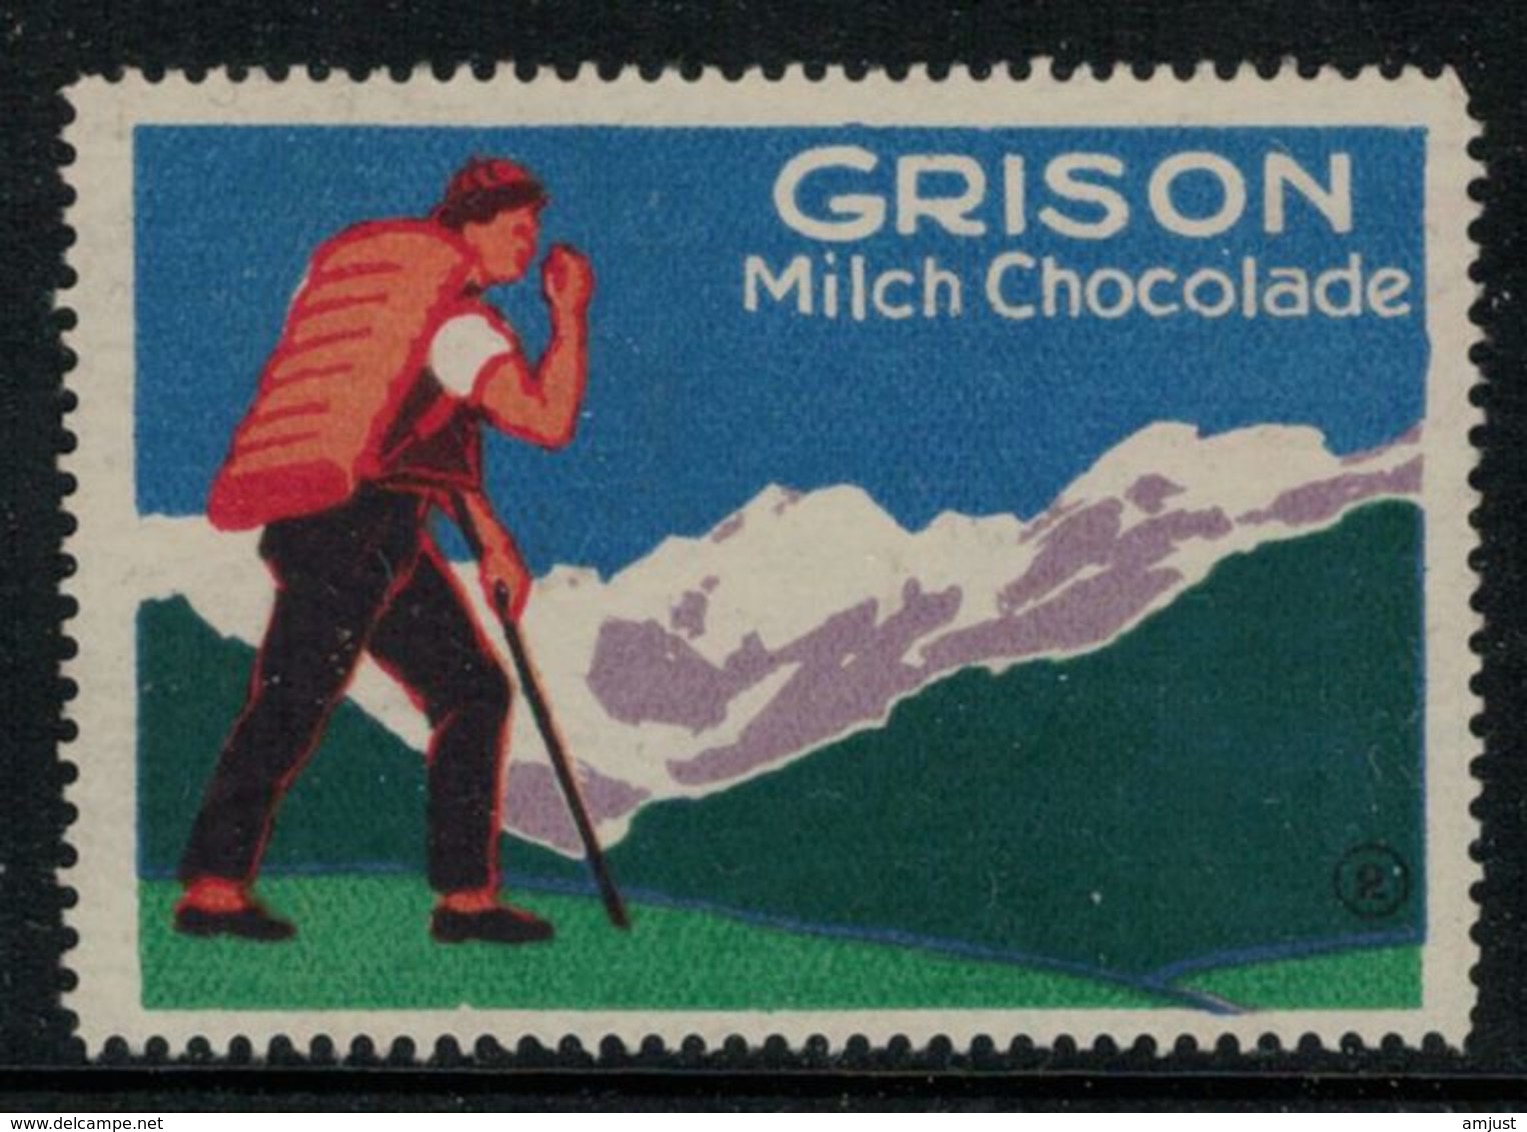 Suisse // Schweiz // Switzerland // Erinnophilie  //  Vignette Publicitaire "Grison Milch Chocolade" - Erinofilia